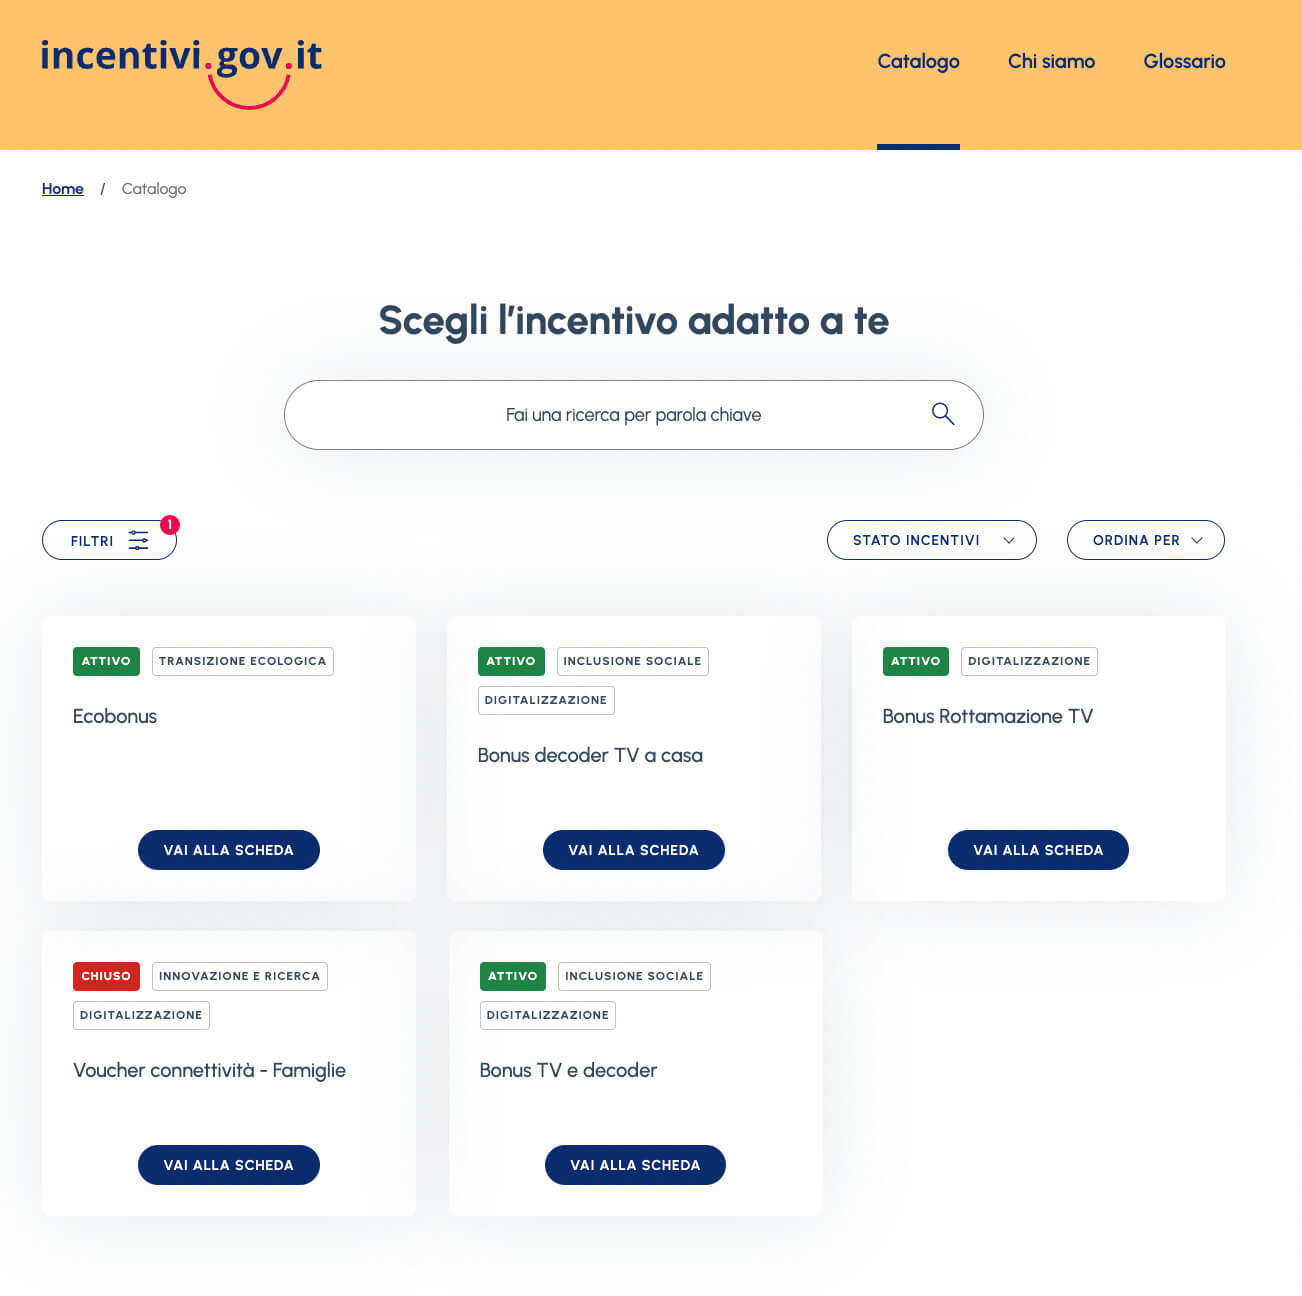 Piattaforma incentivi.gov.it cittadini